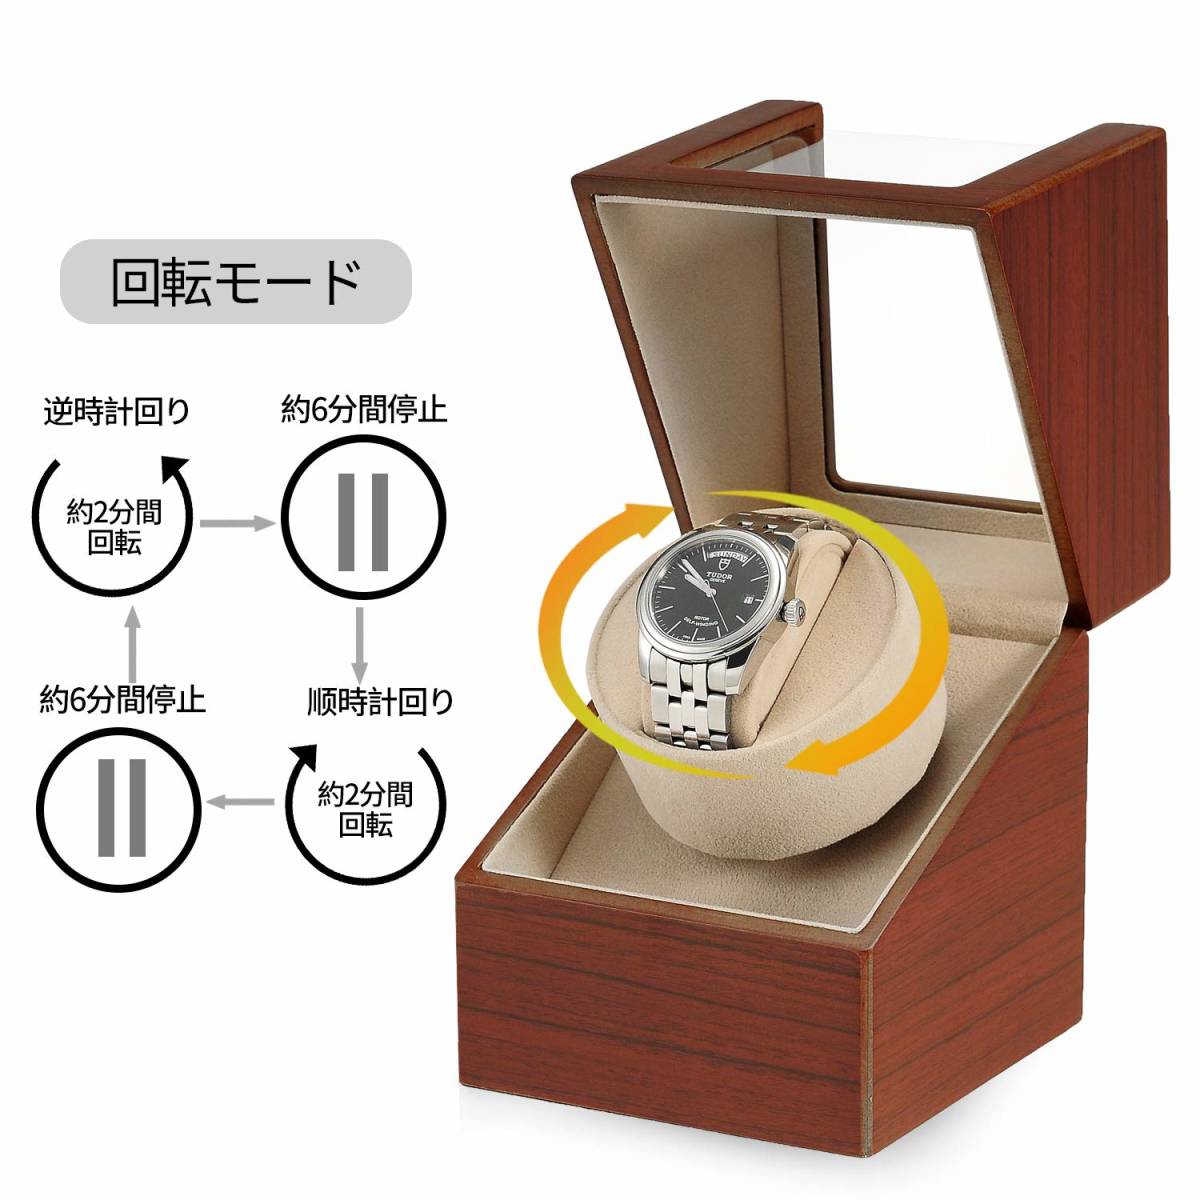 [. мир новейший версия ] заводящее устройство ( 1 шт. наматывать ) часы Winder самозаводящиеся часы часы заводящее устройство сделано в Японии ( Brown )